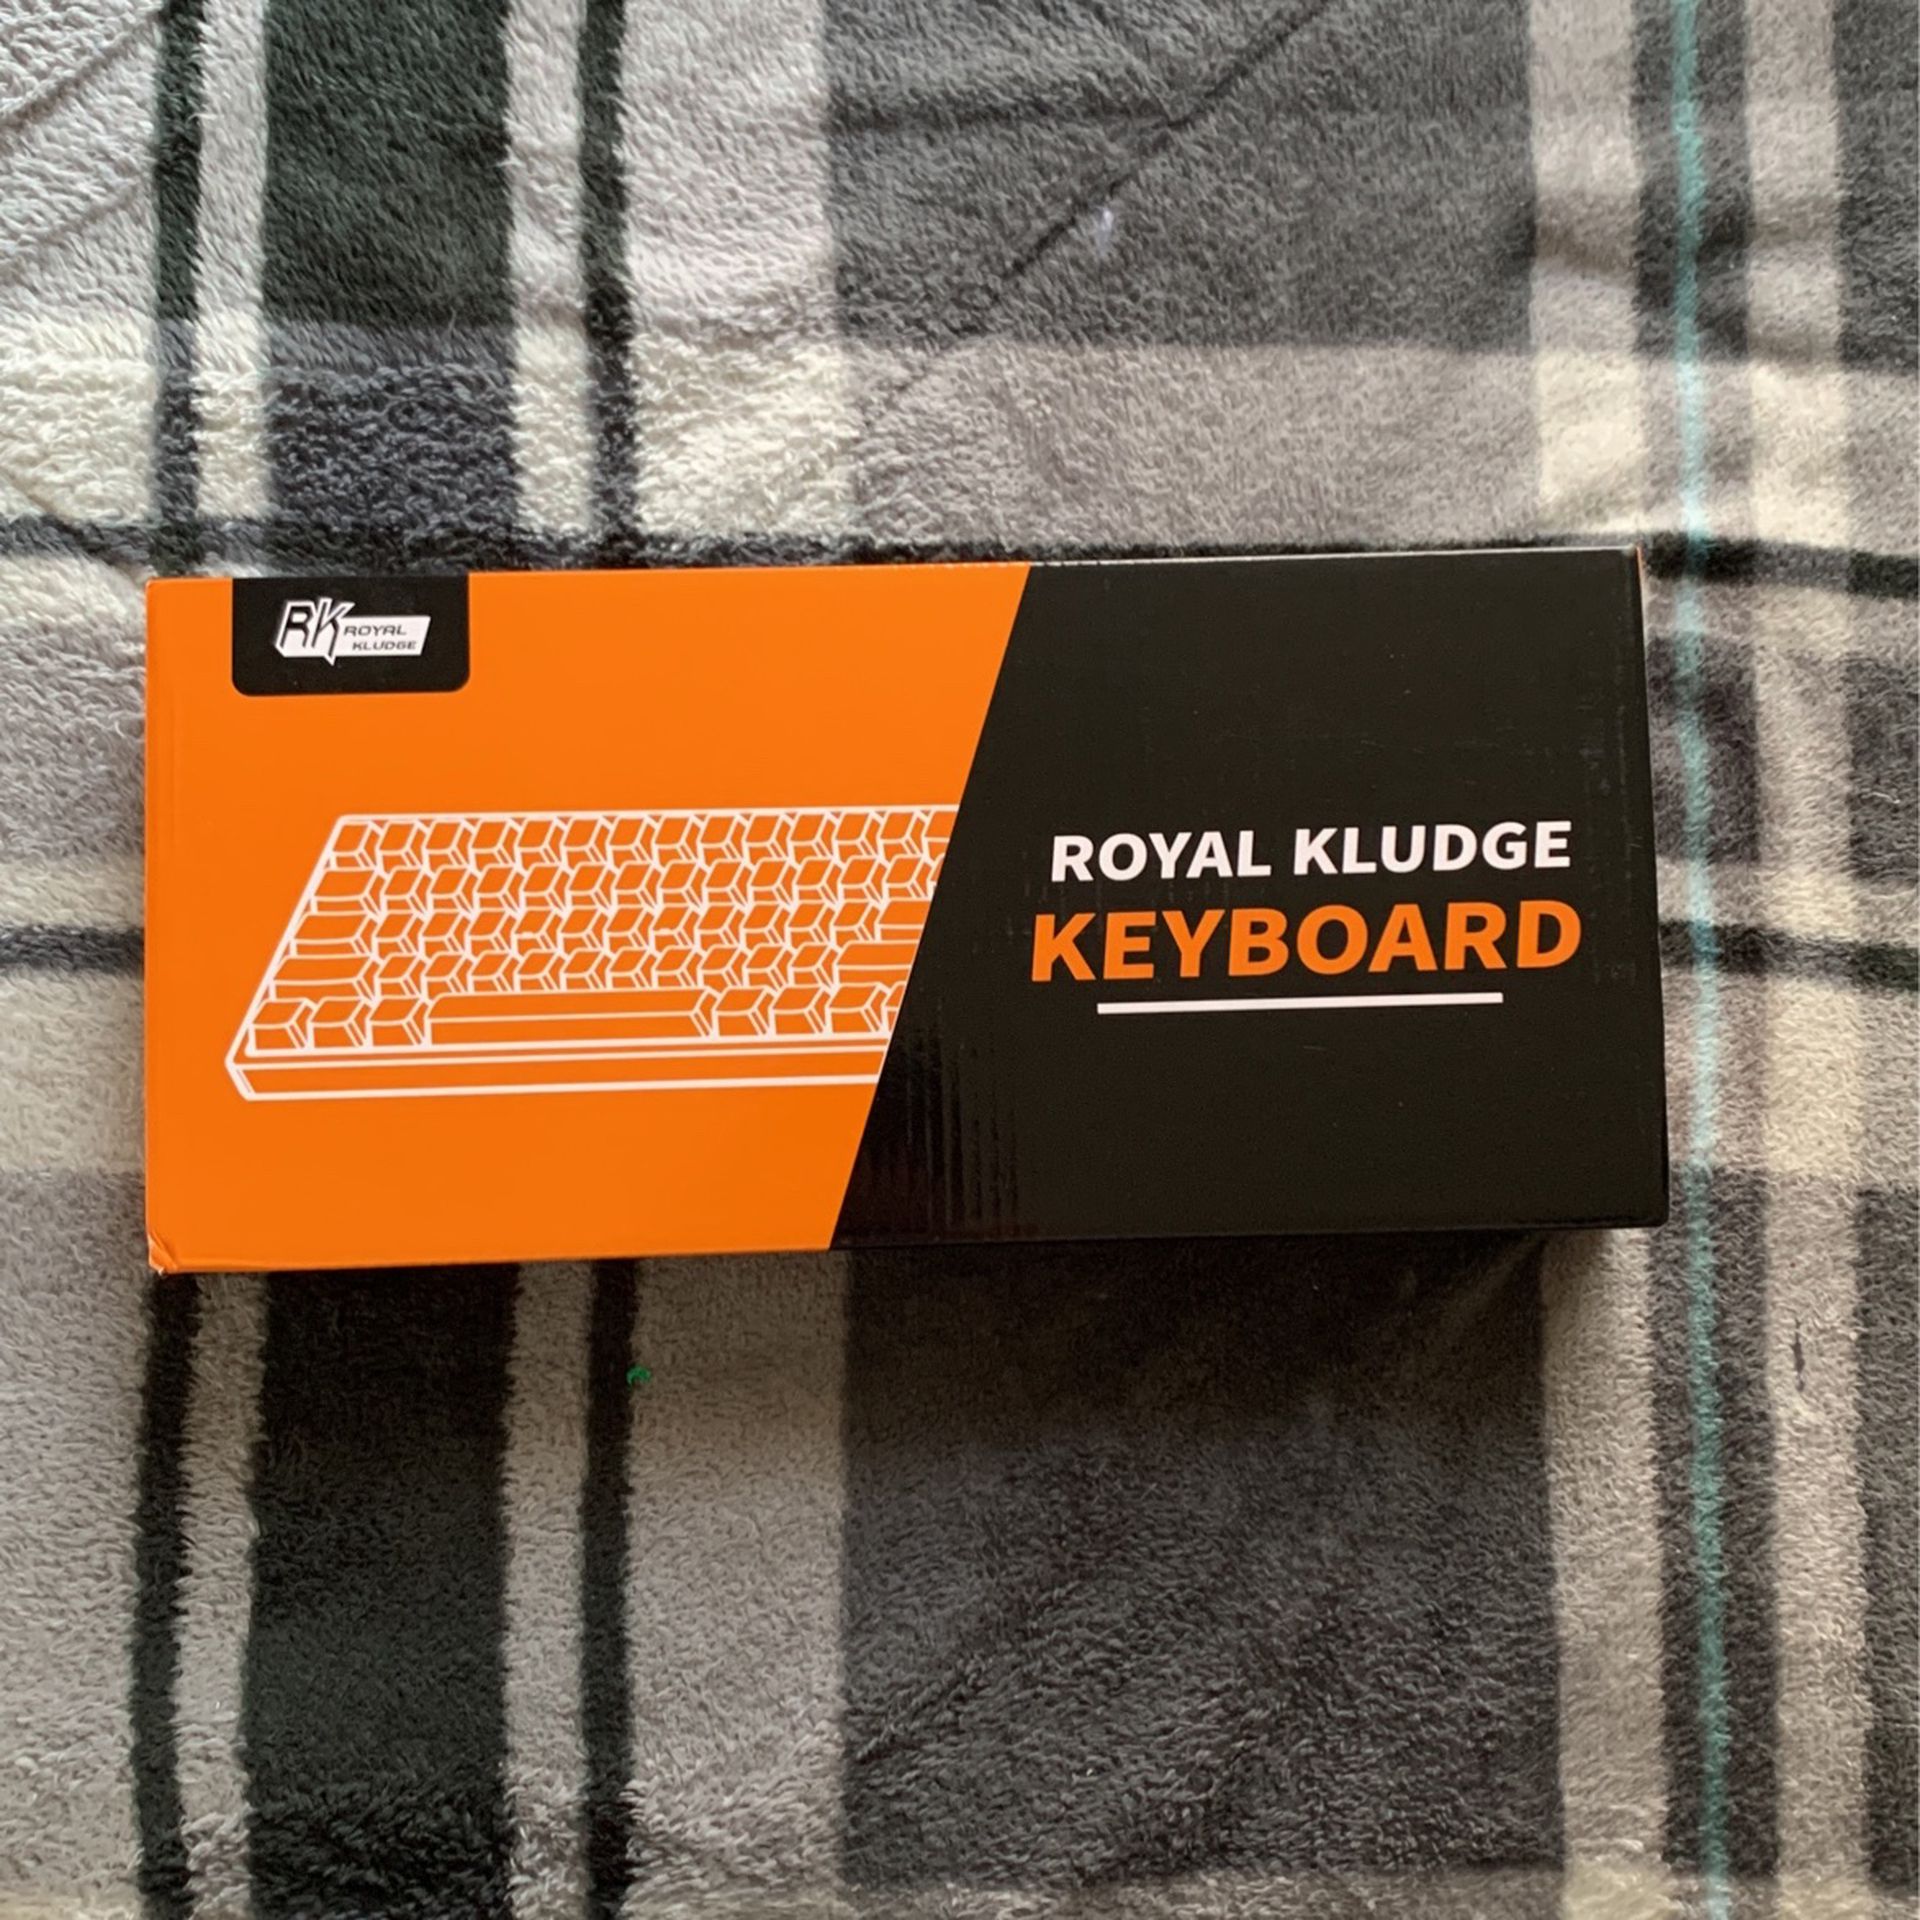 Royal Kludge Keyboard (RK61)